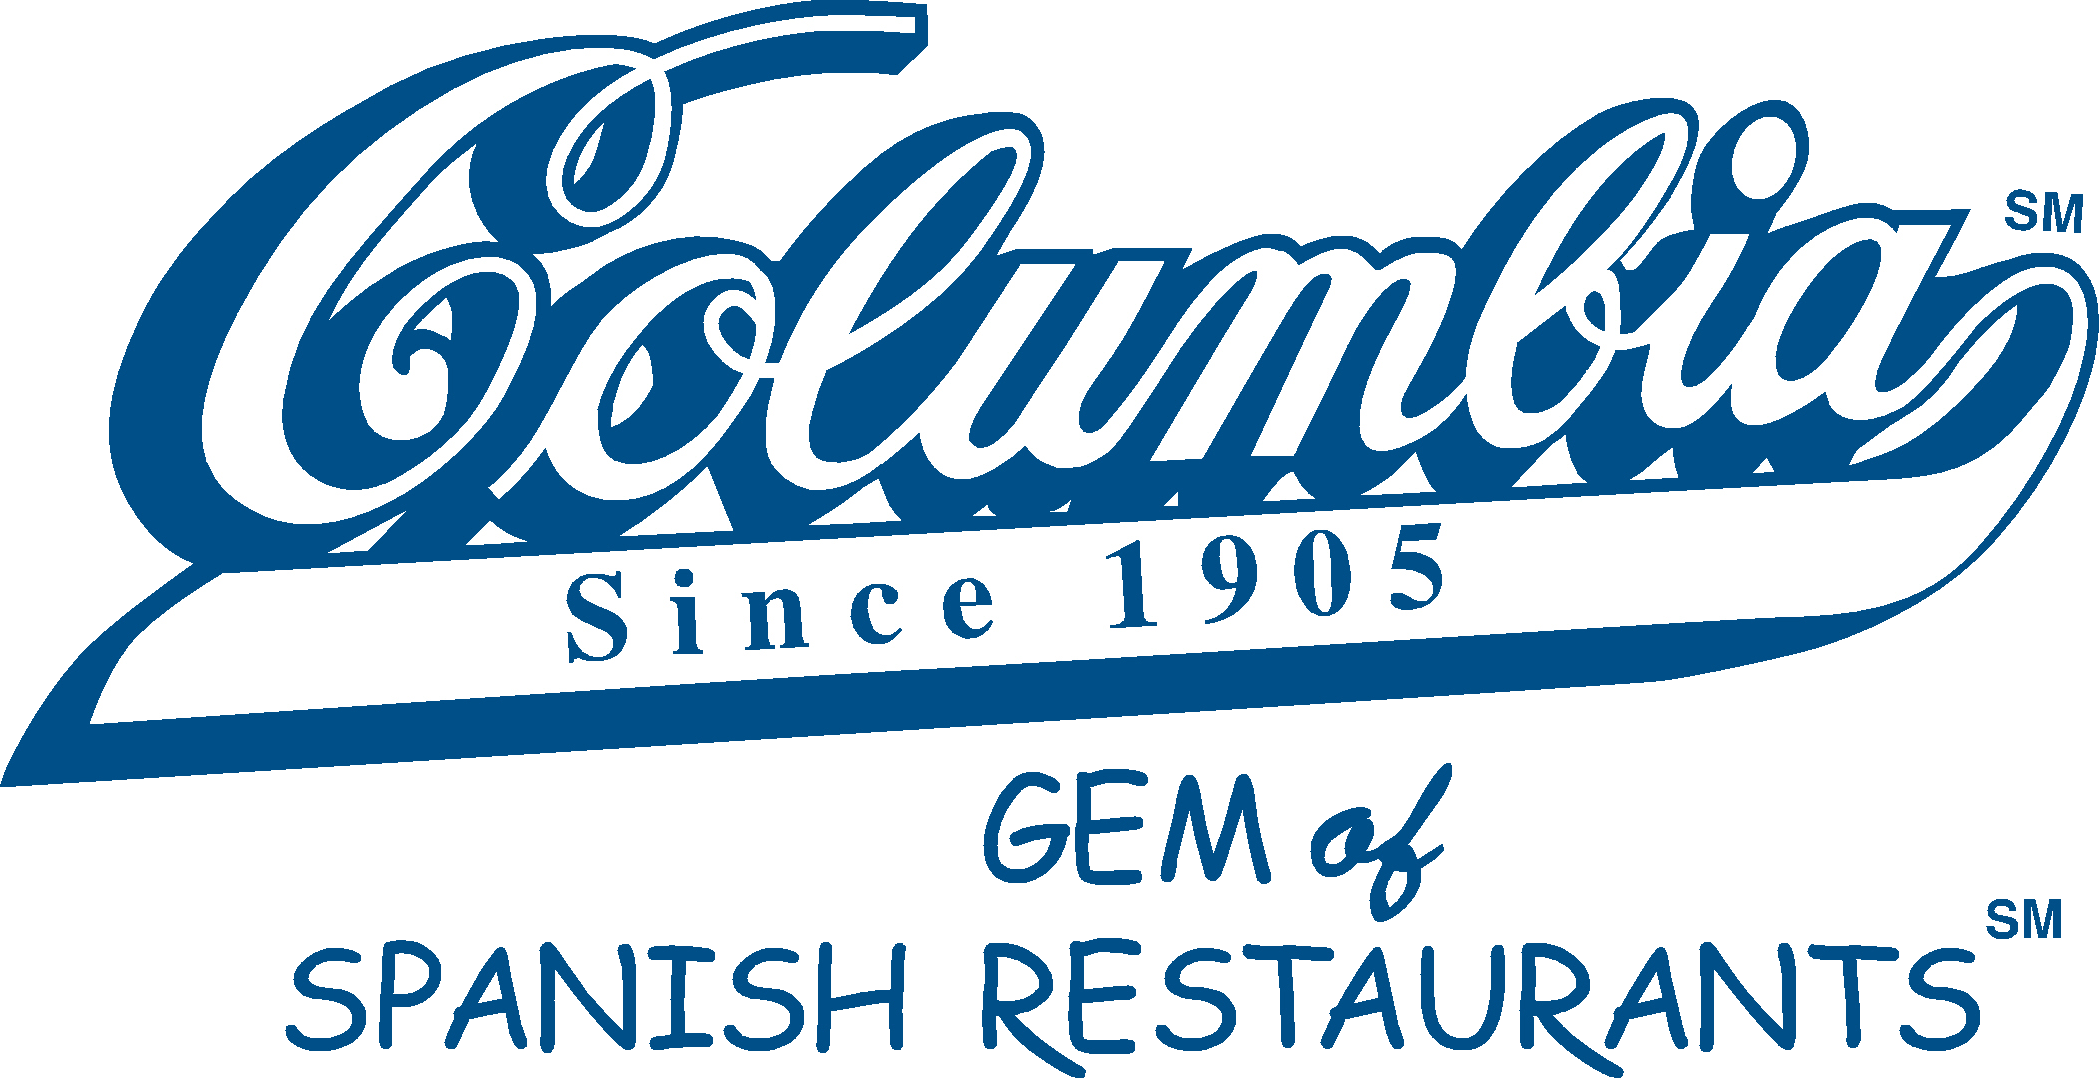 Columbia Restaurant